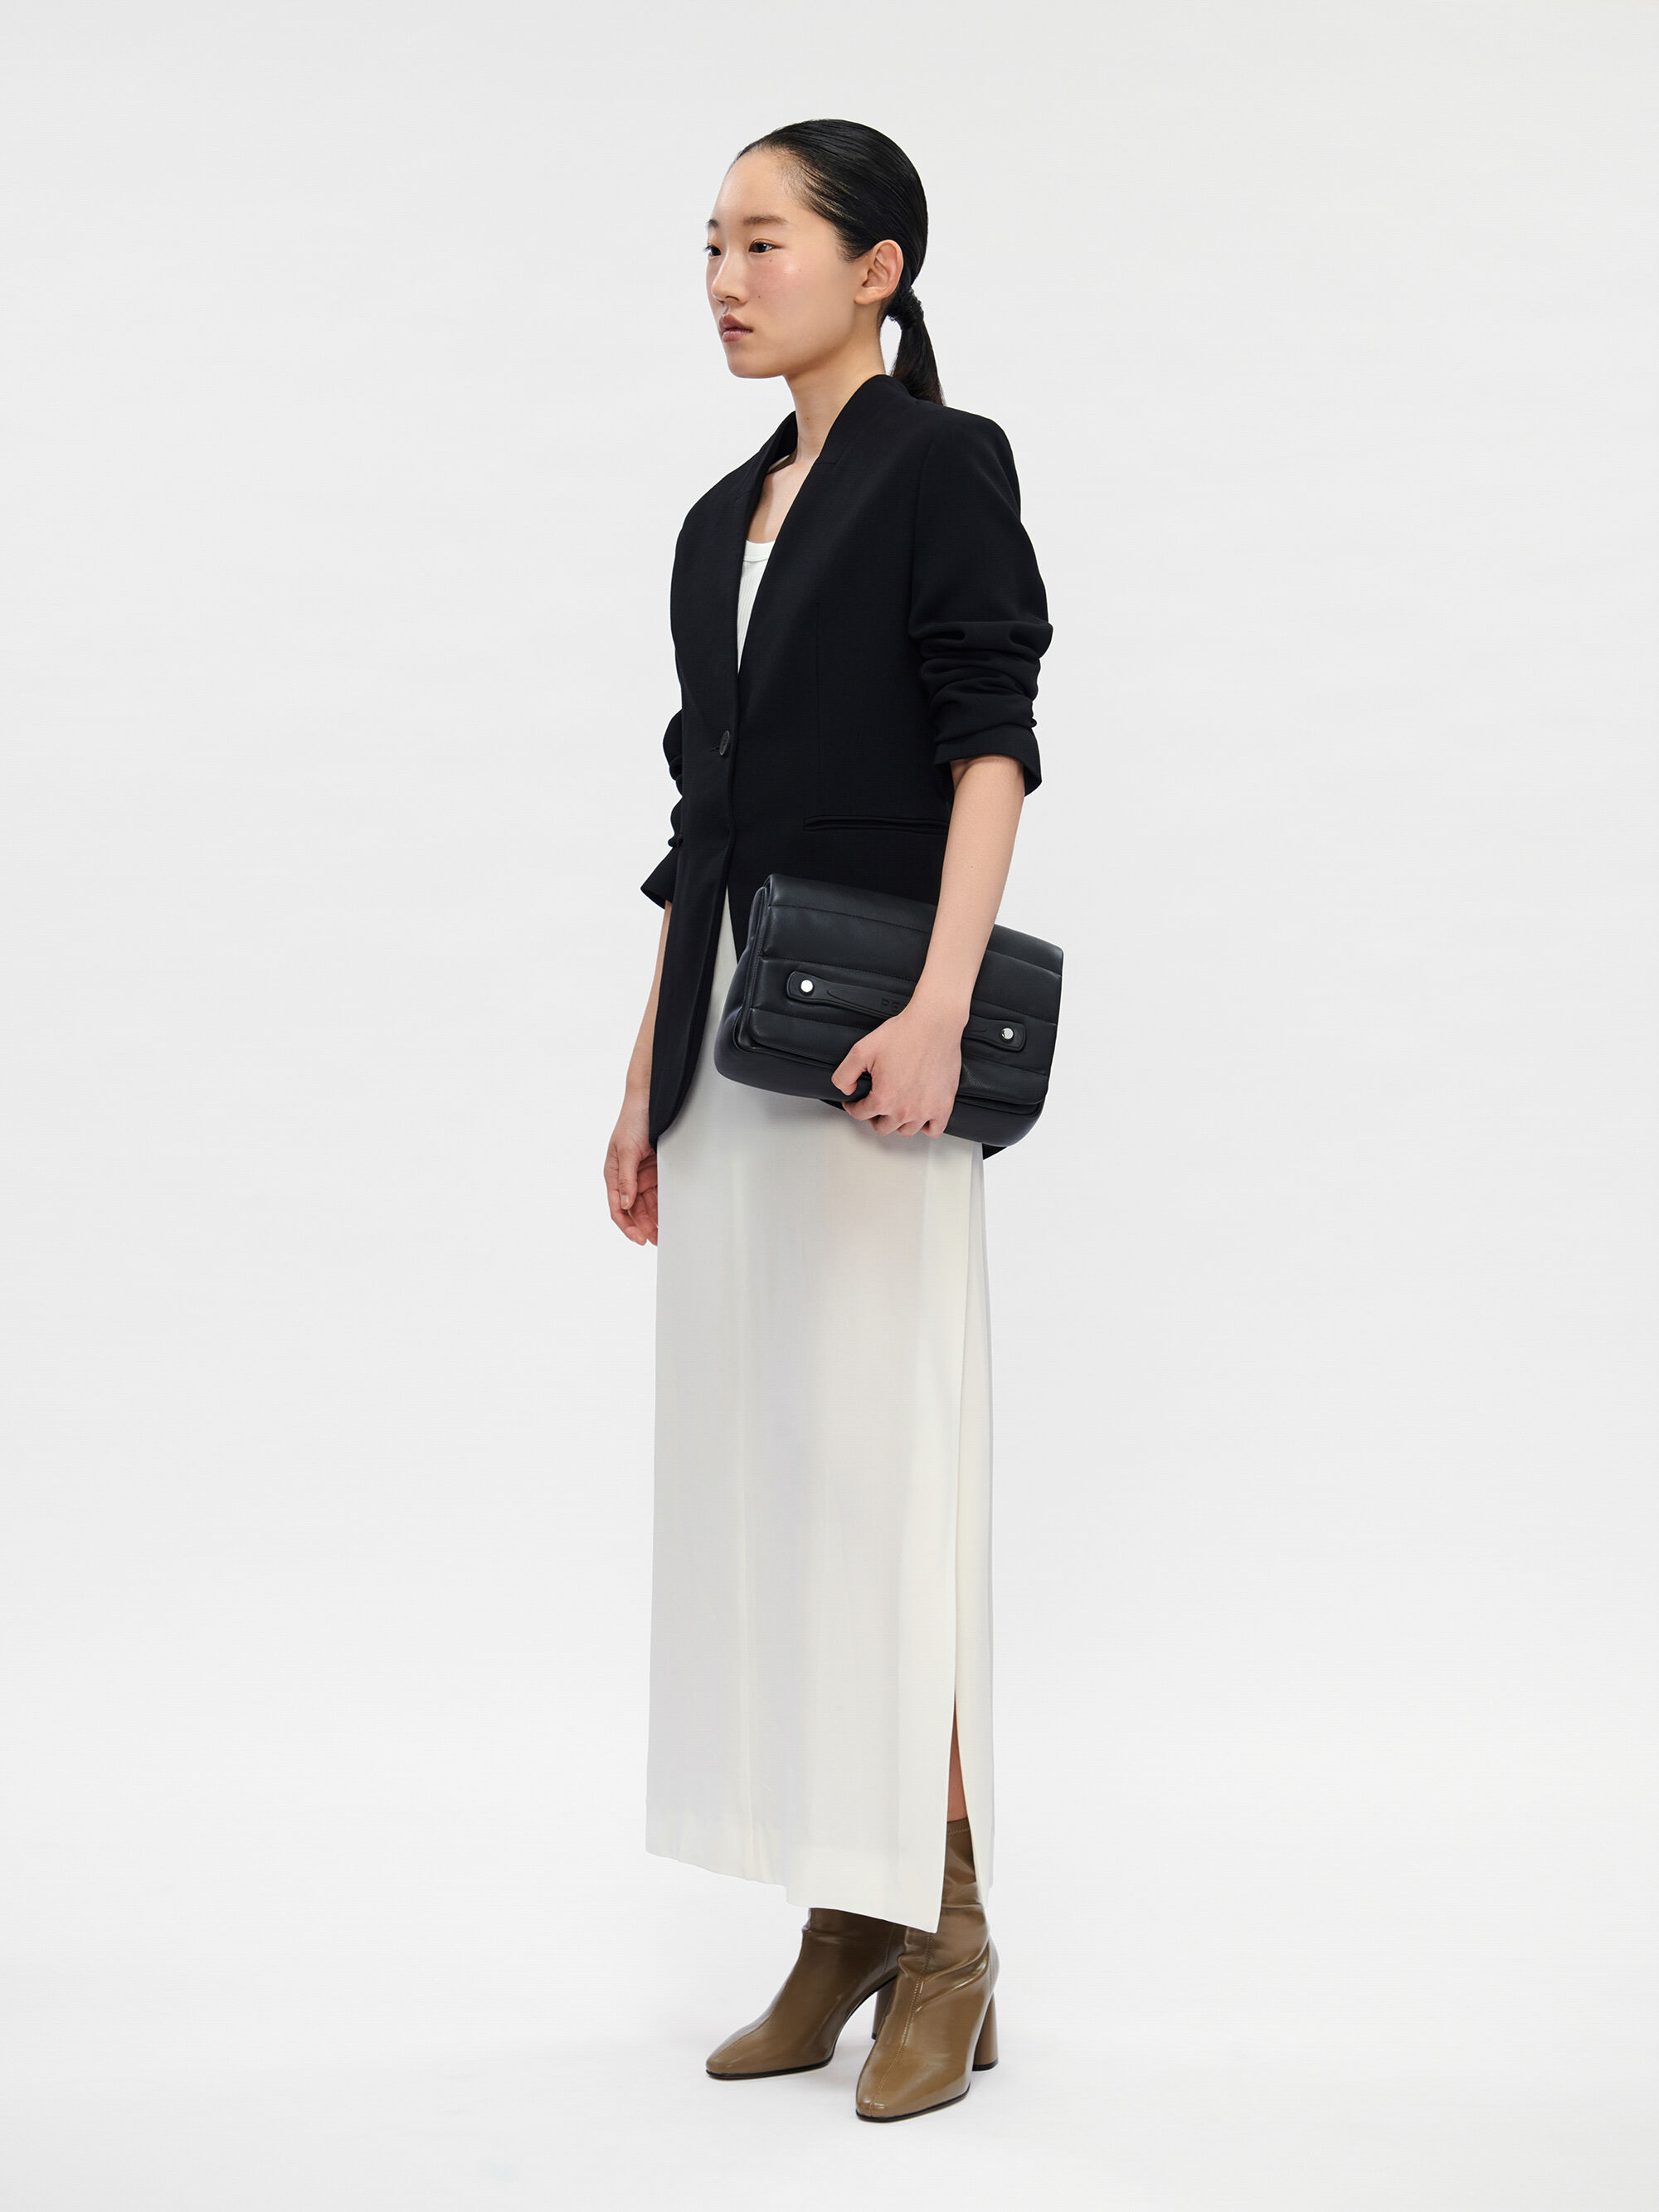 PEDRO Millie Shoulder Bag Size: W25.5 x H14 x D5.5 cm Colors